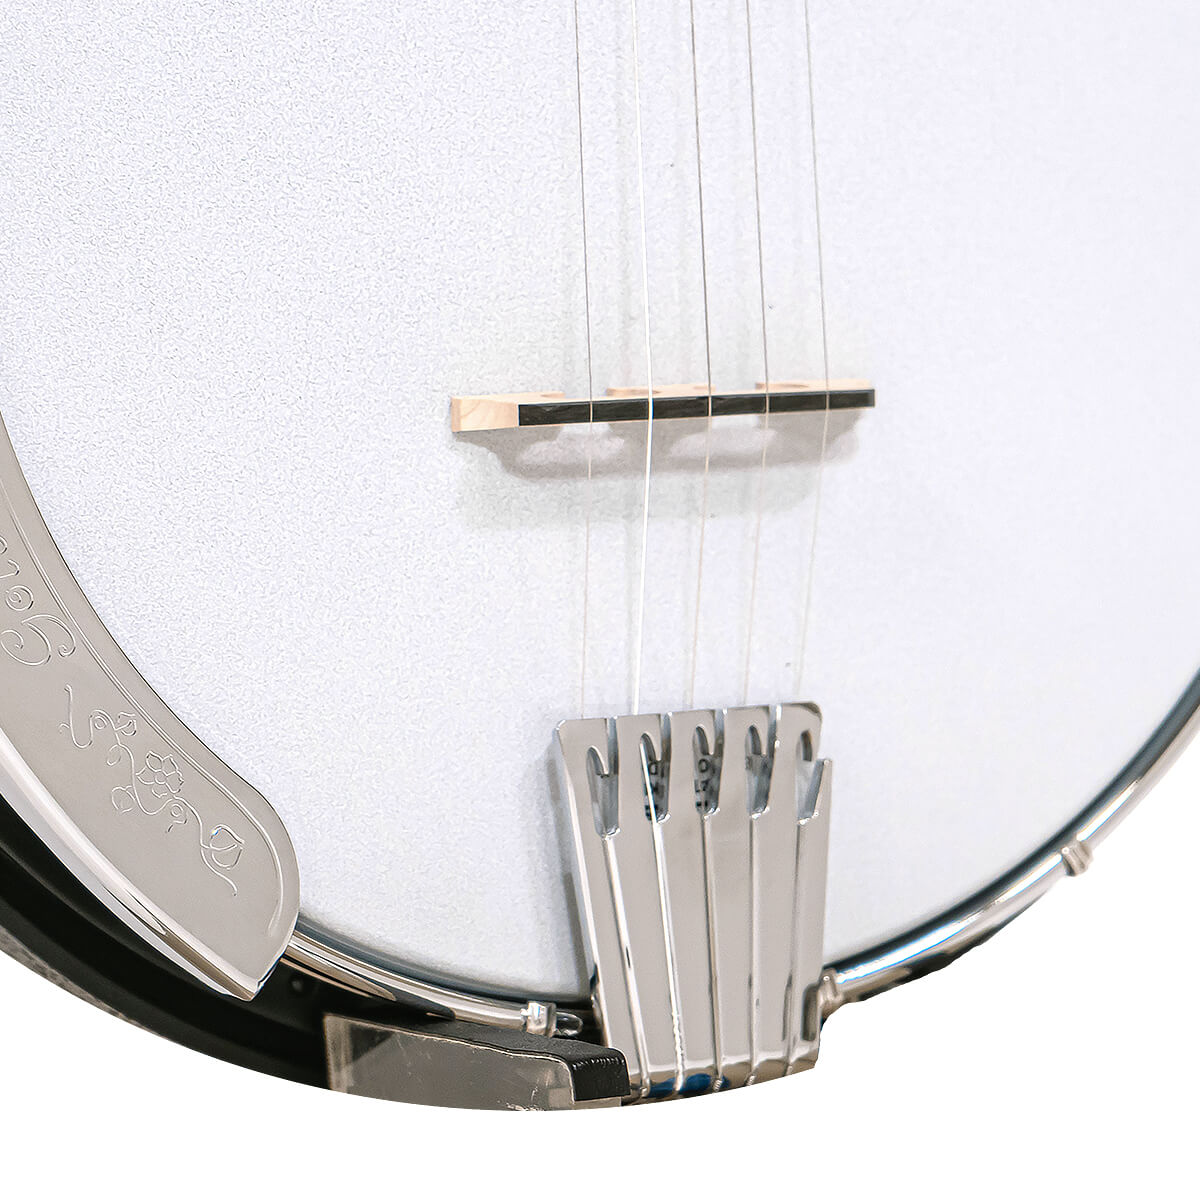 AC-5: Acoustic Composite Banjo